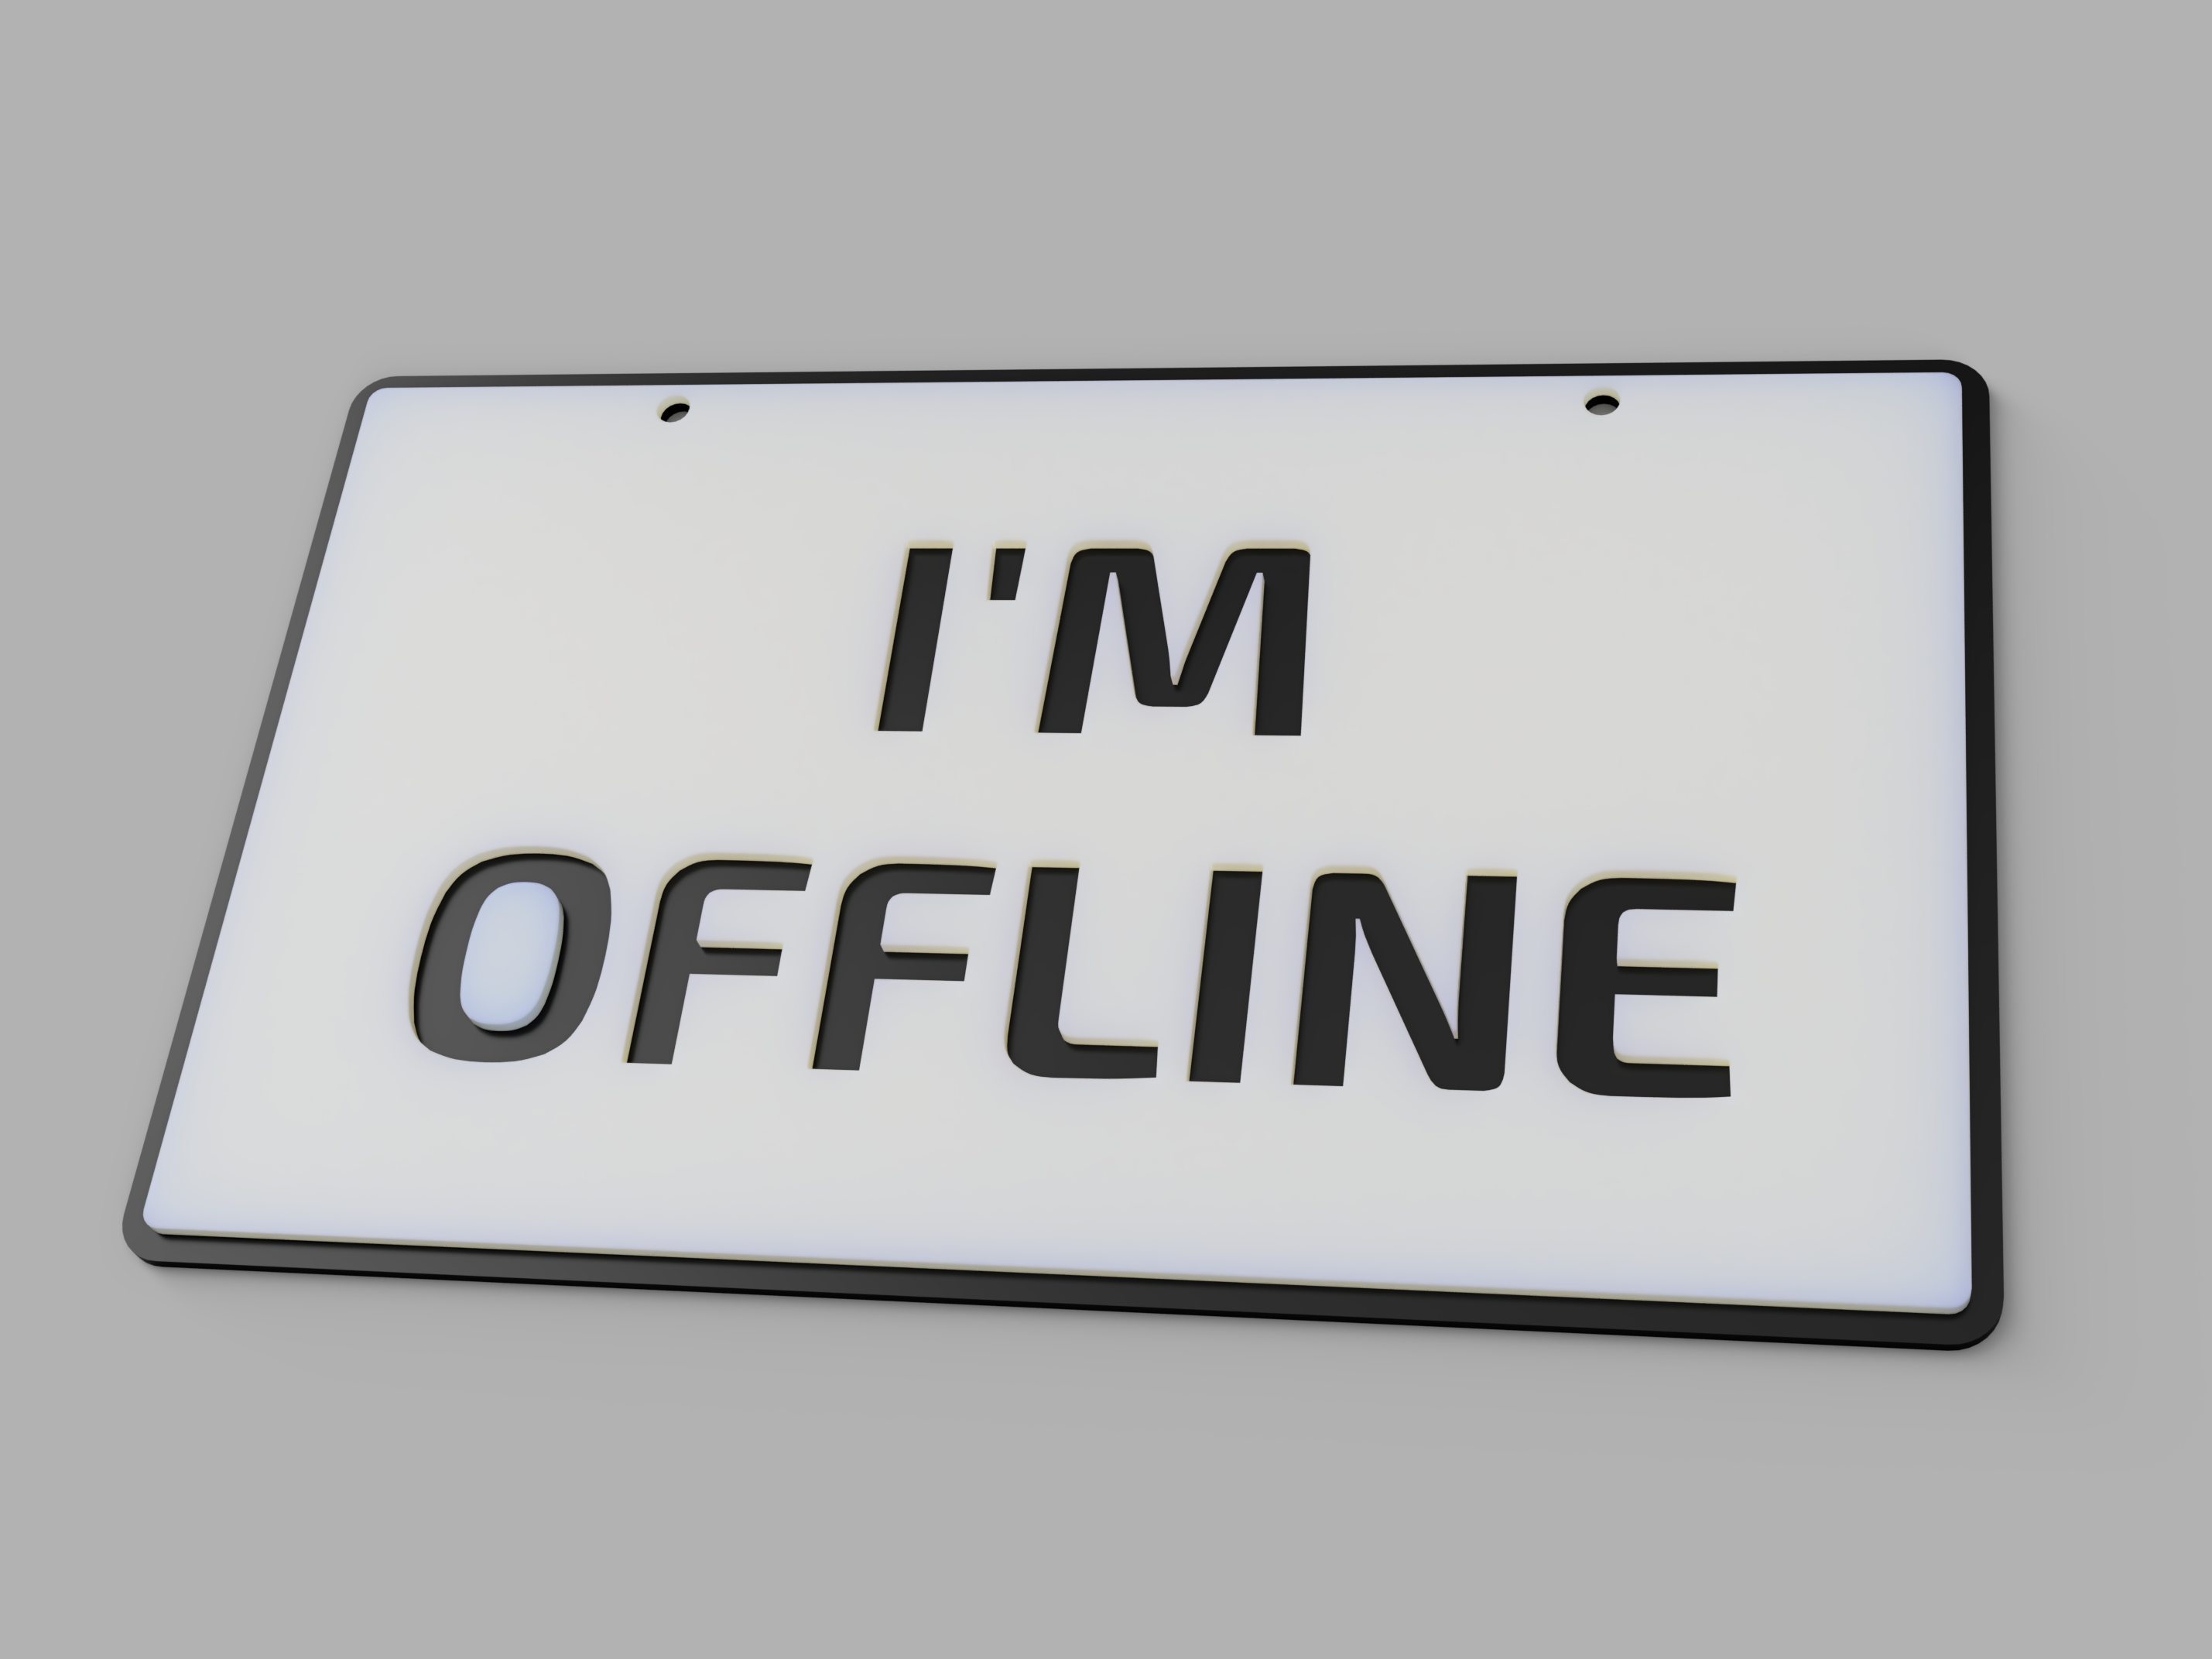 "I'm offline" sign